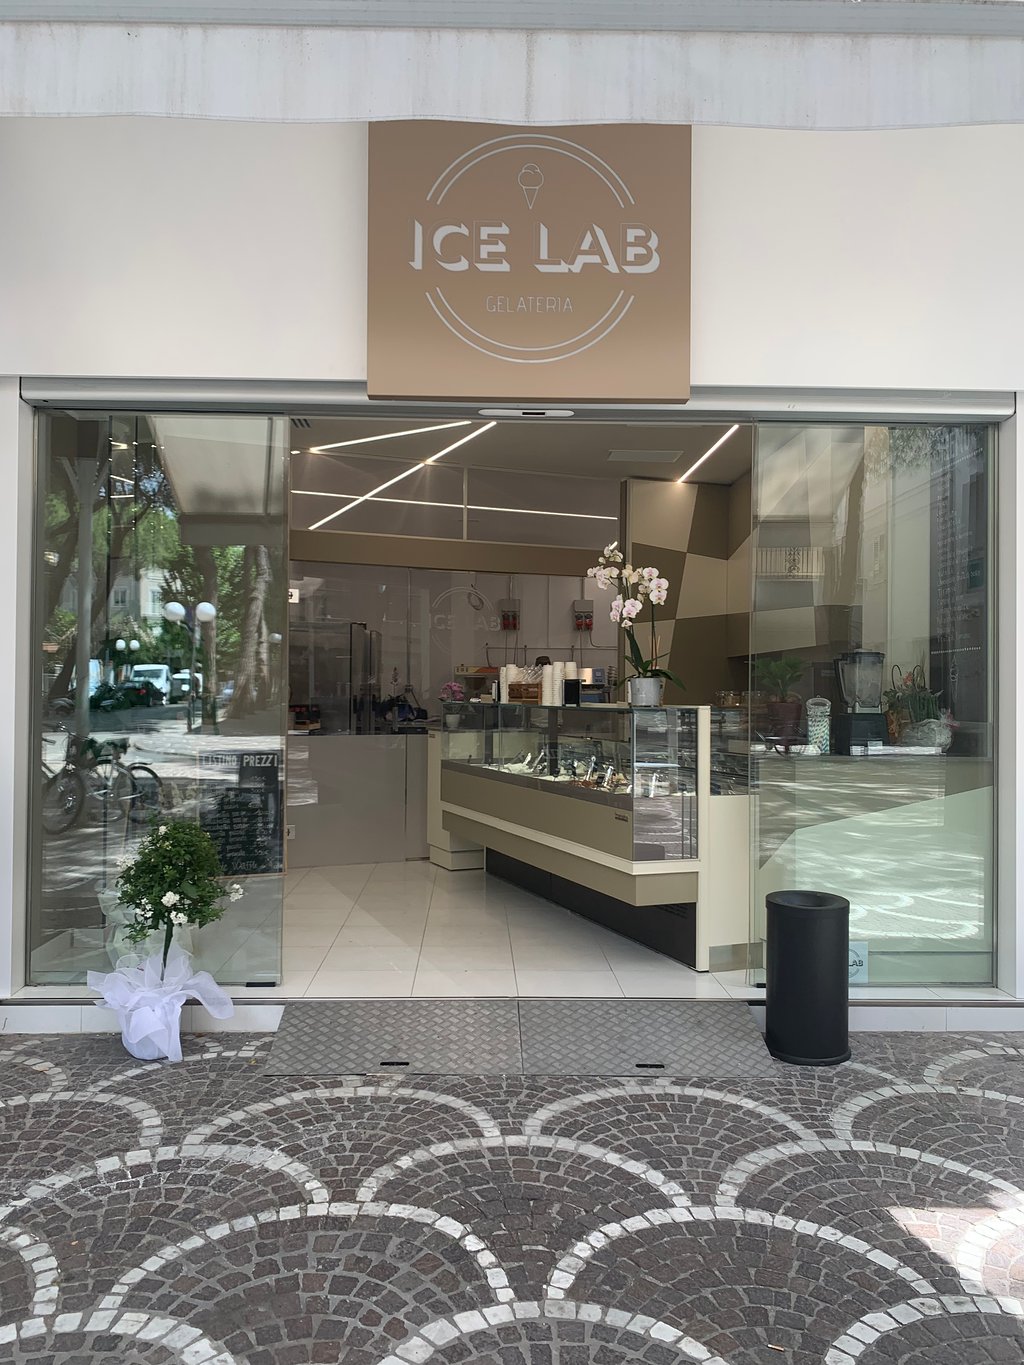 Ice Lab Gelateria, Cattolica